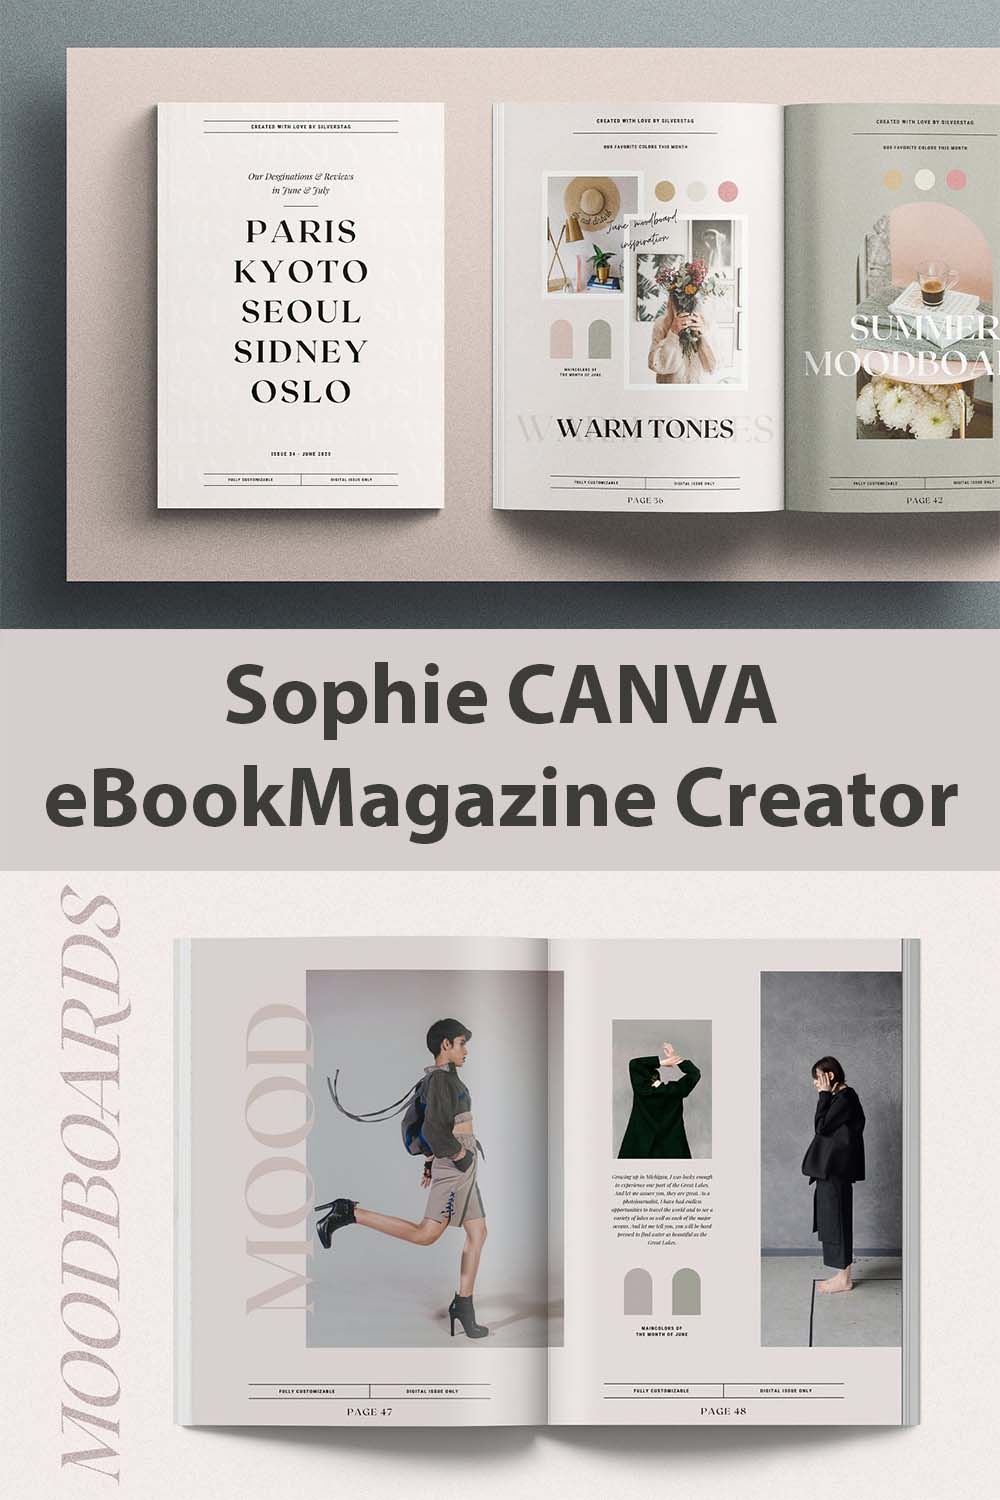 Sophie CANVA eBookMagazine Creator pinterest image.